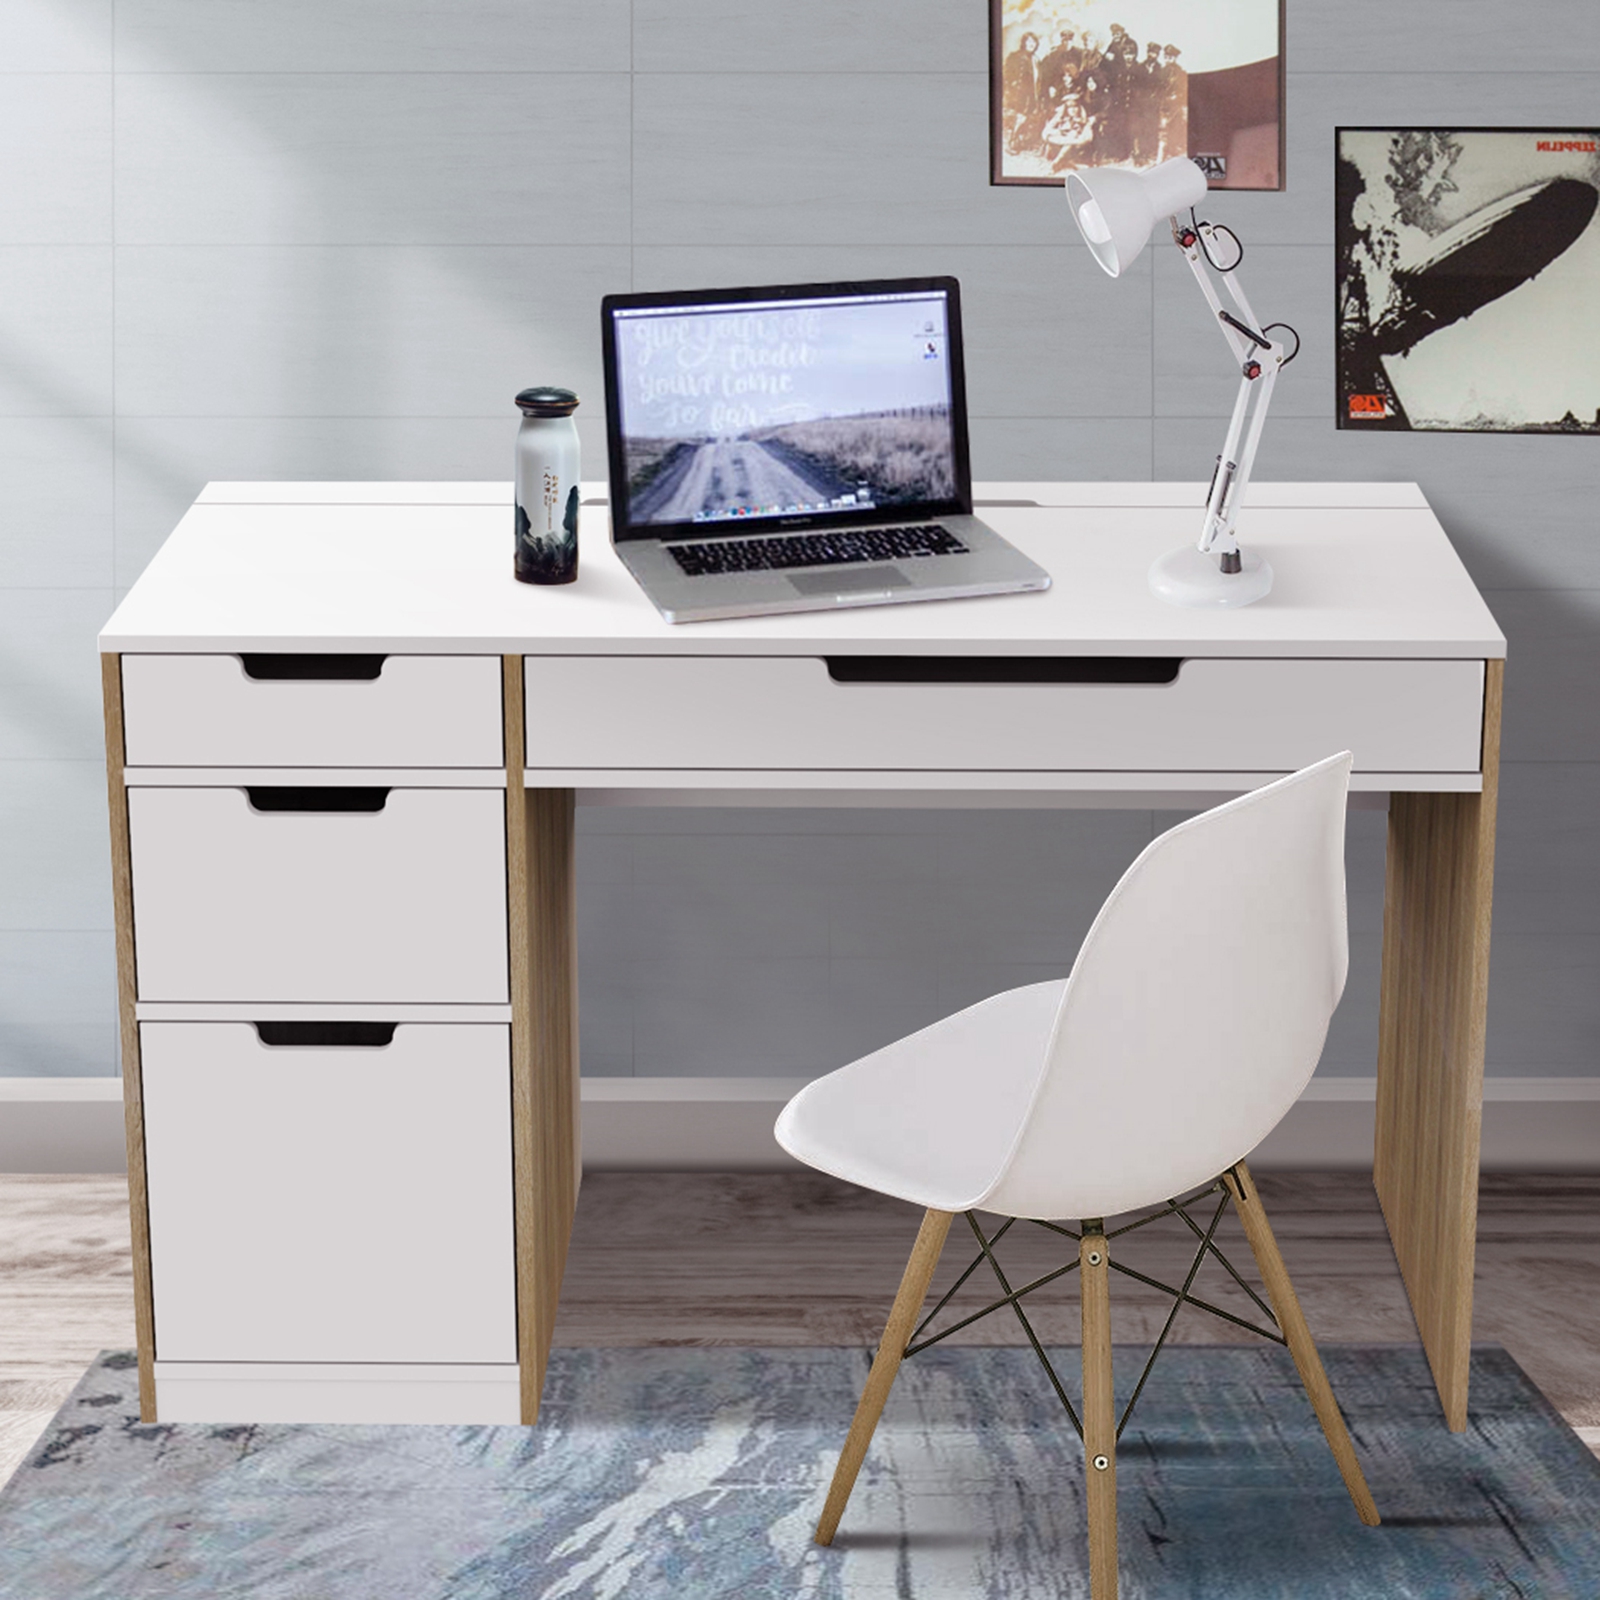   Hekman Wooden Computer Desk White